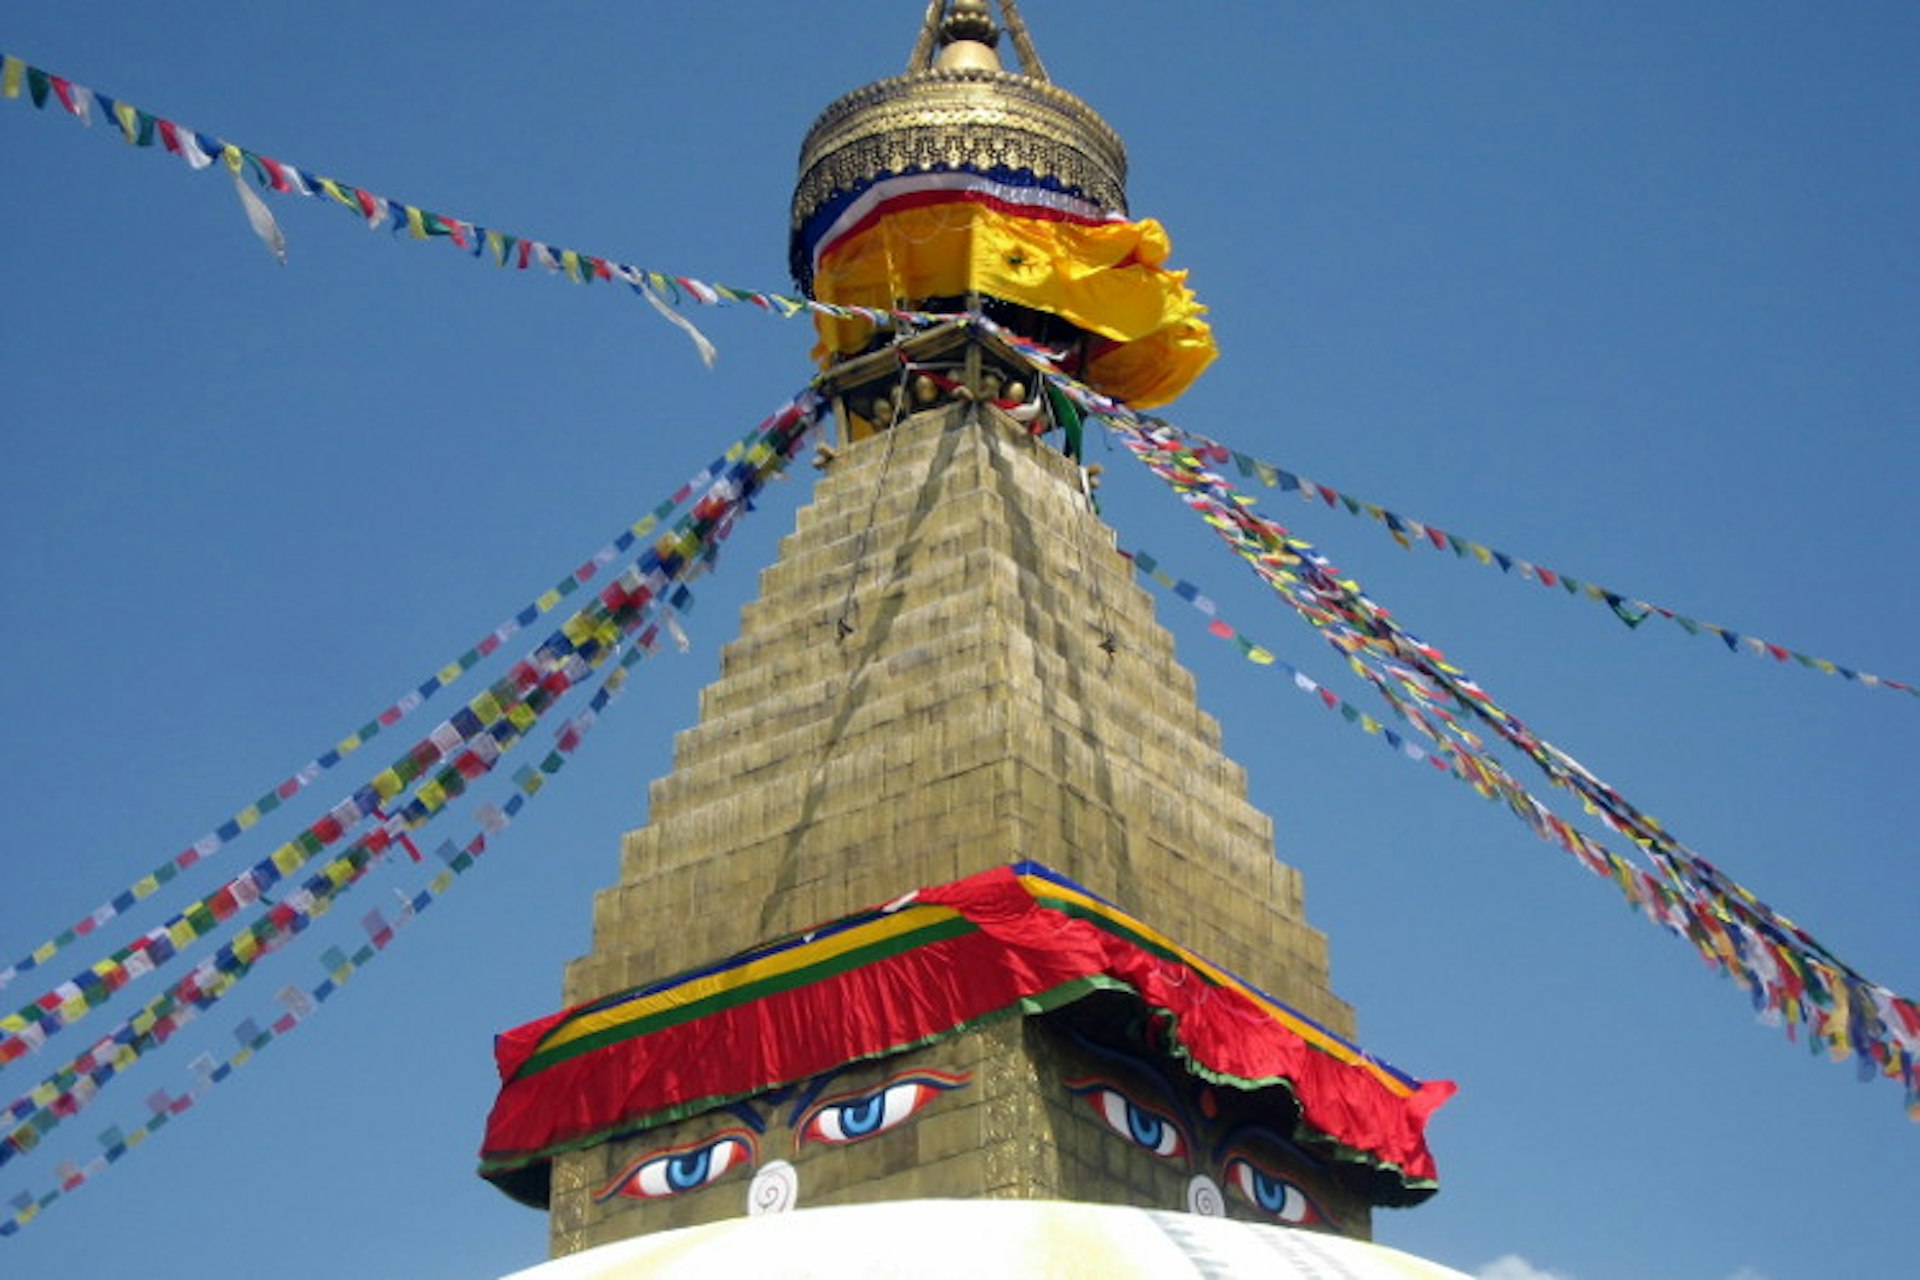 Eyes of Buddha at Bodhnath Stupa, Nepal. Image by wonker / CC by 2.0.